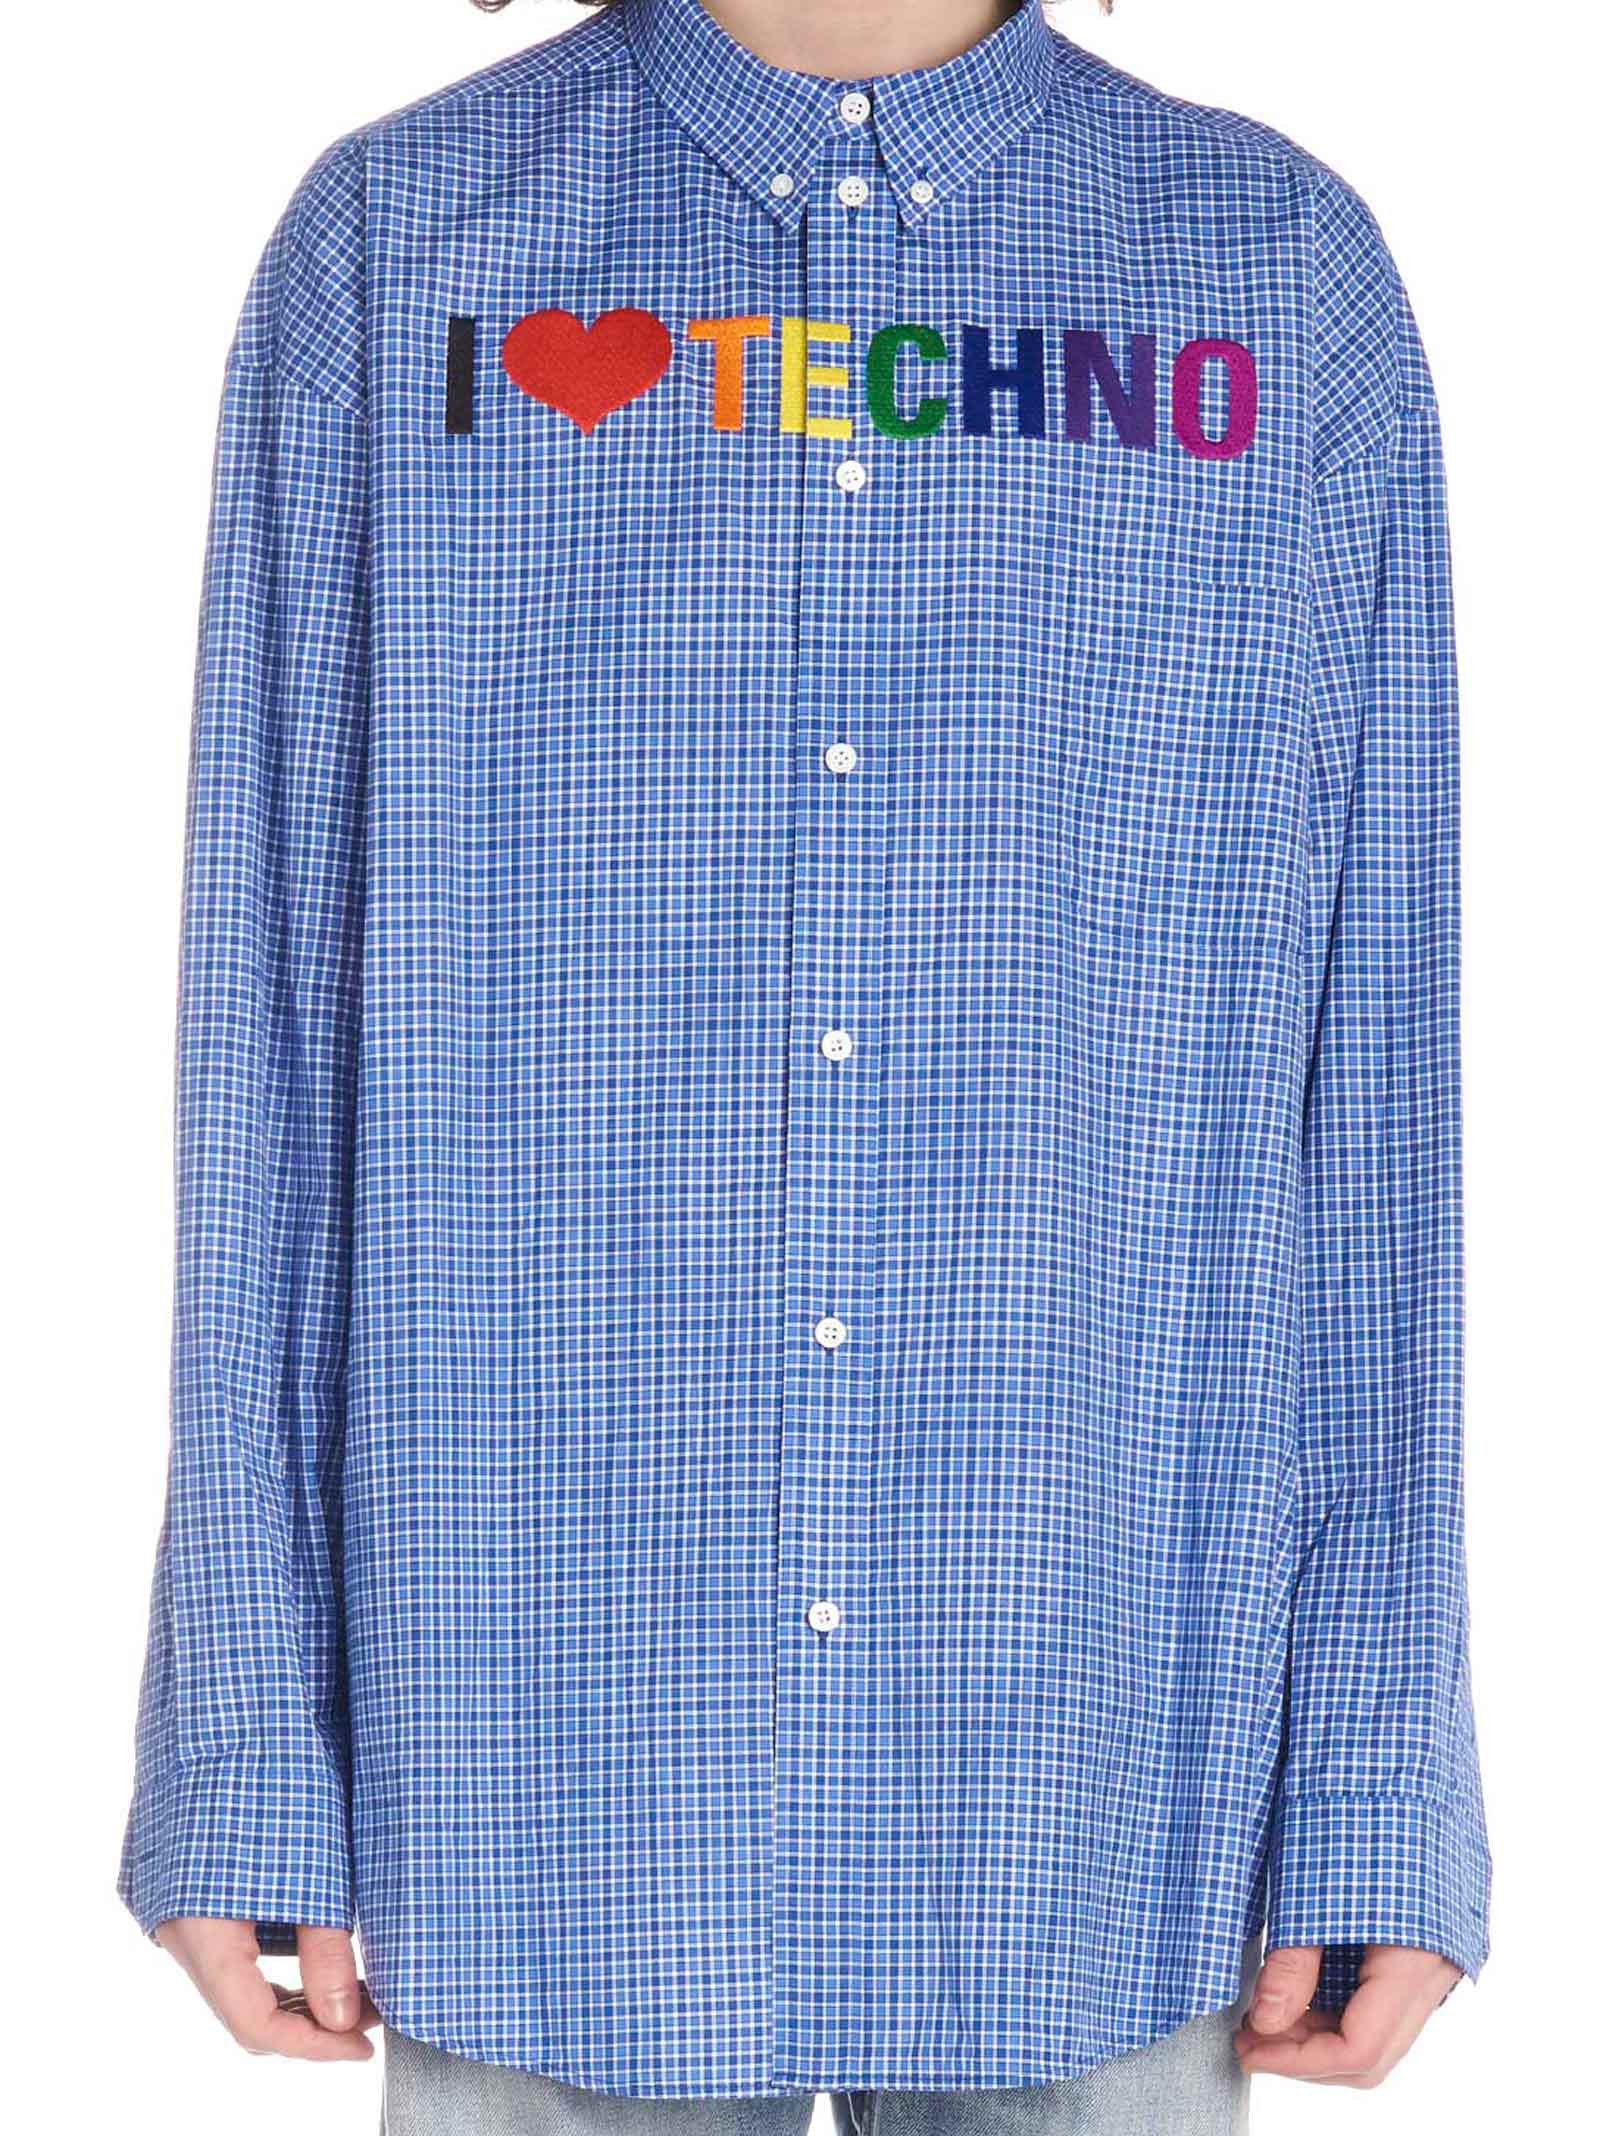 balenciaga i love techno shirt